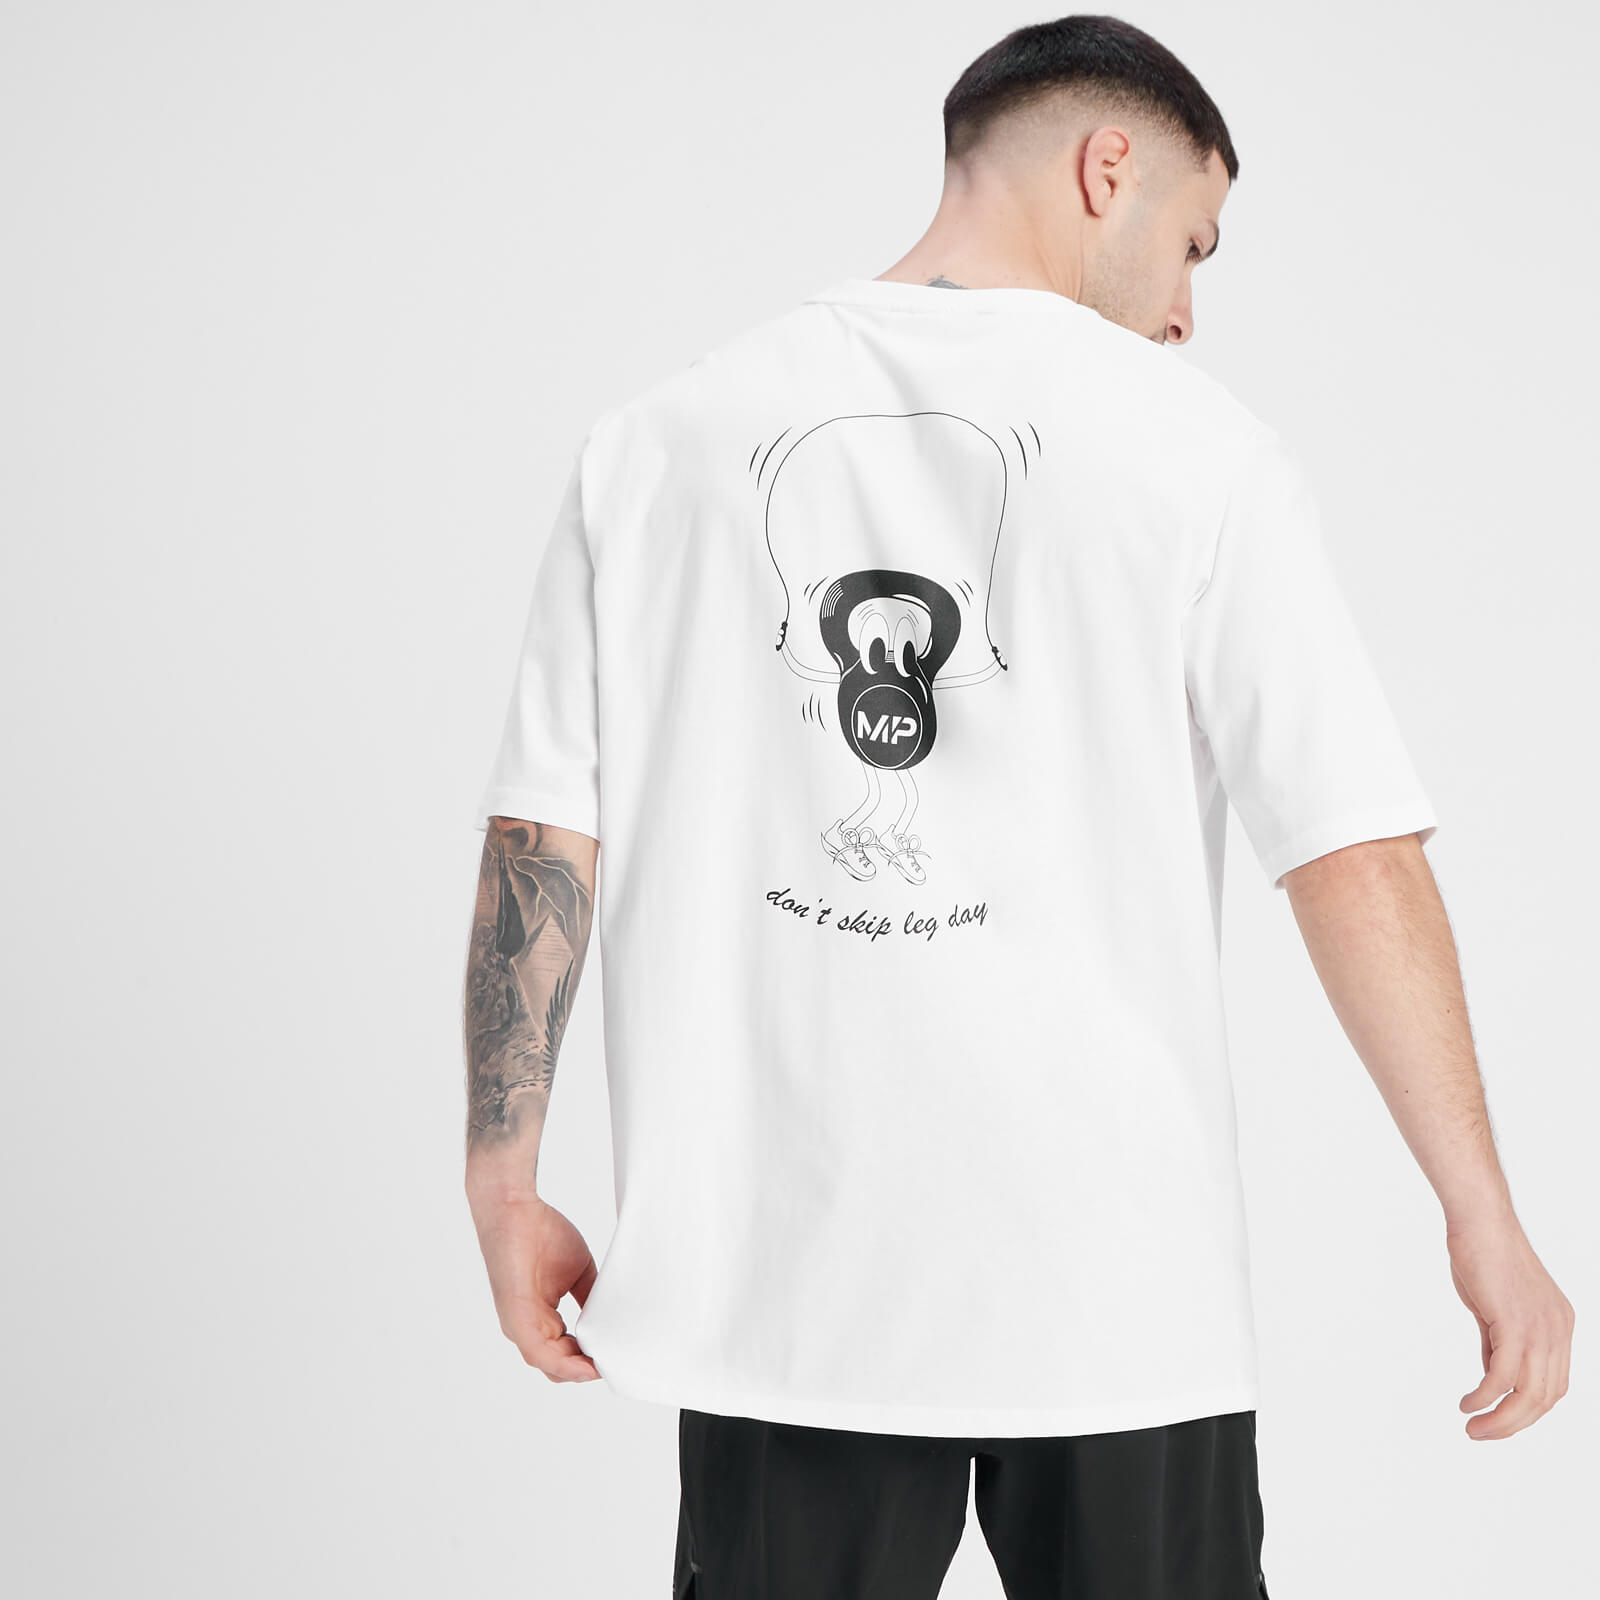 MP Leg Day Graphic Мъжка тениска със щампа нестандартен размер – бял